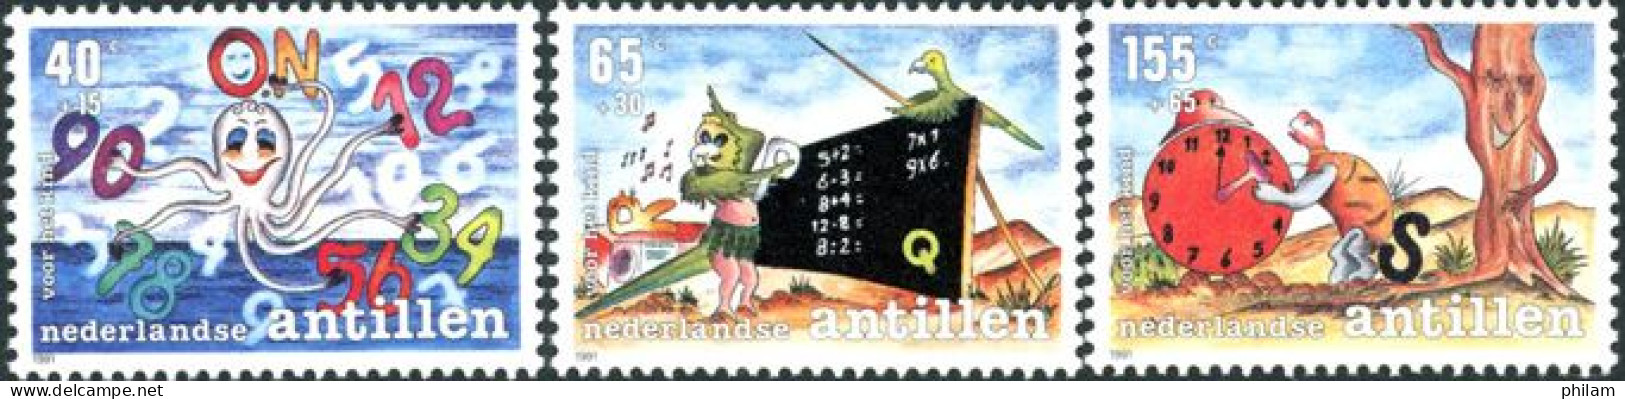 ANTILLES NEERLANDAISES 1991 - Enfance - Fables Et Légendes - 3 V. - Curacao, Netherlands Antilles, Aruba